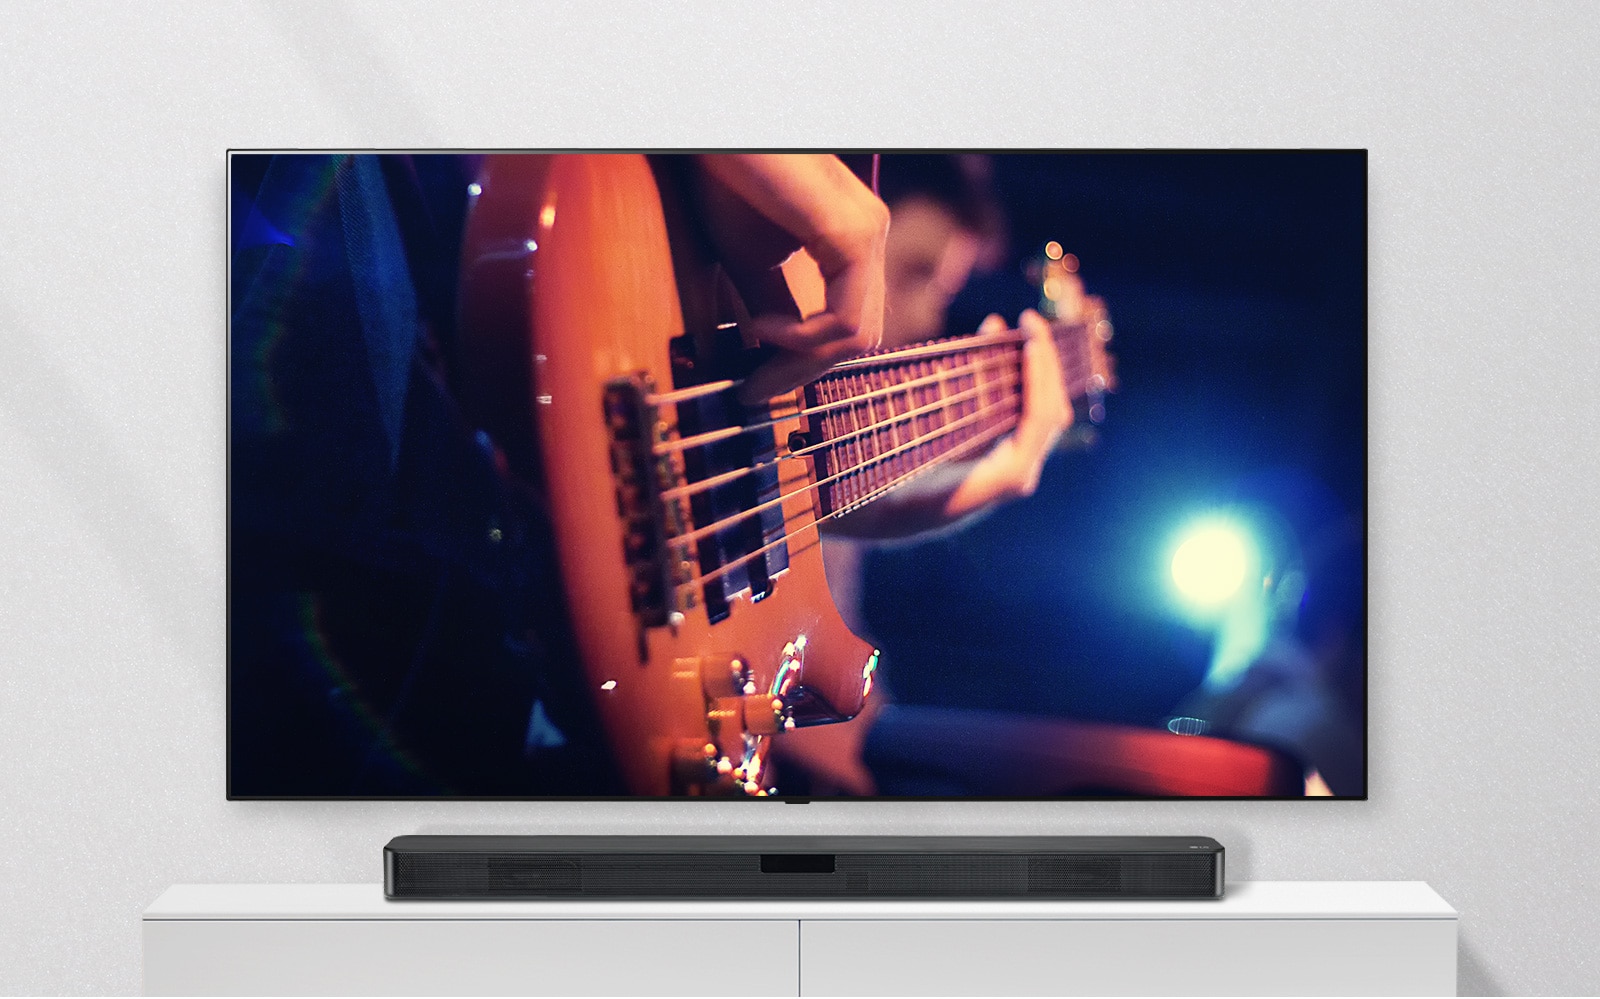 TV được gắn vào tường và loa sound bar nằm trên kệ màu trắng. TV hiển thị một người đàn ông đang chơi guitar.